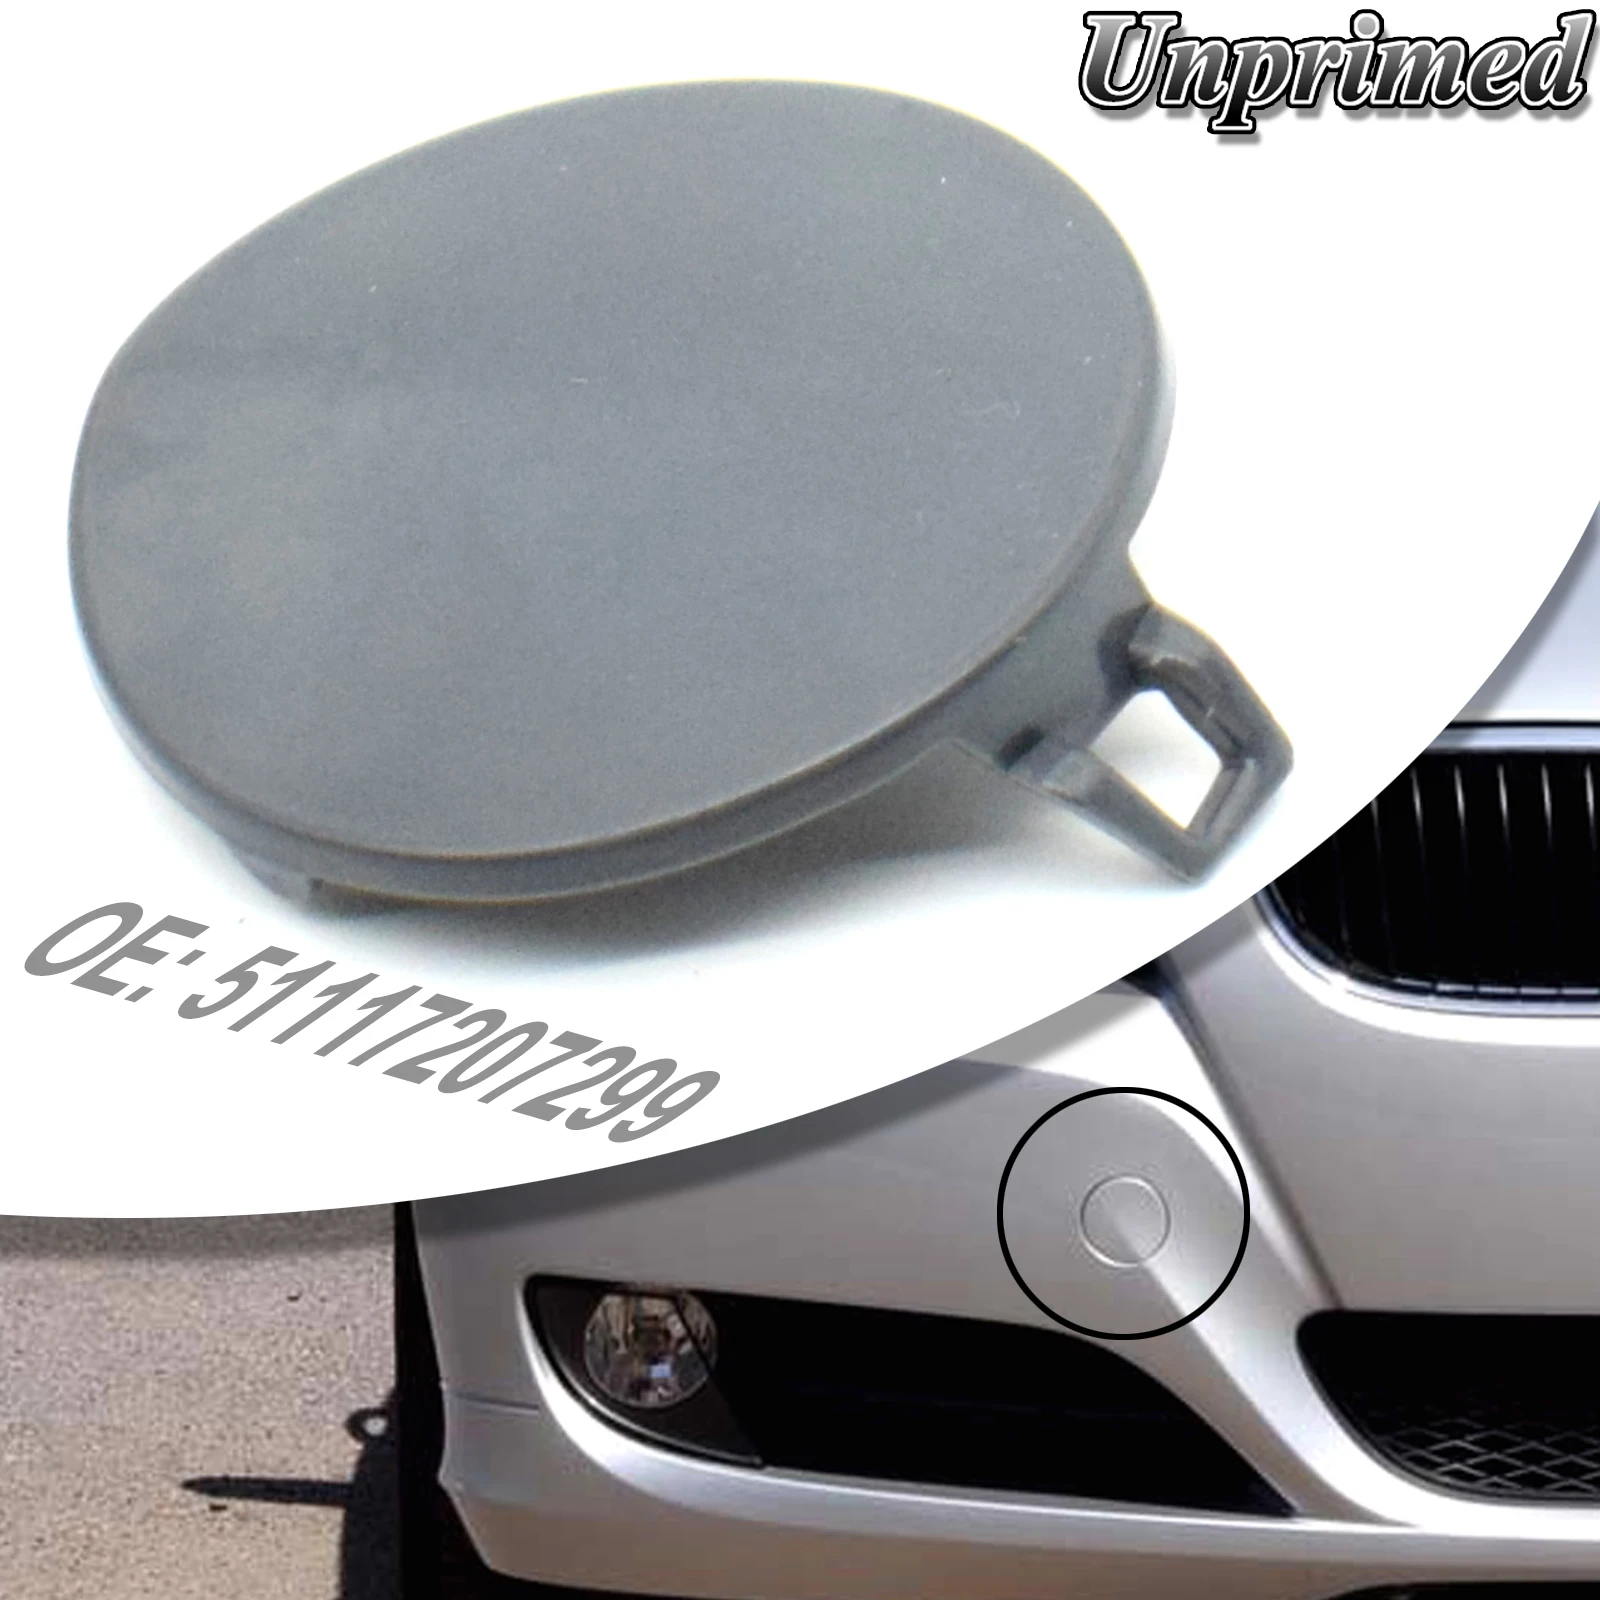 

Front Bumper Tow Eye Hook Cover Lid Trim Unprimed Cap Hook For BMW 3 Series E90 E91 328i 335d 335i 51127207299 Car Accessories